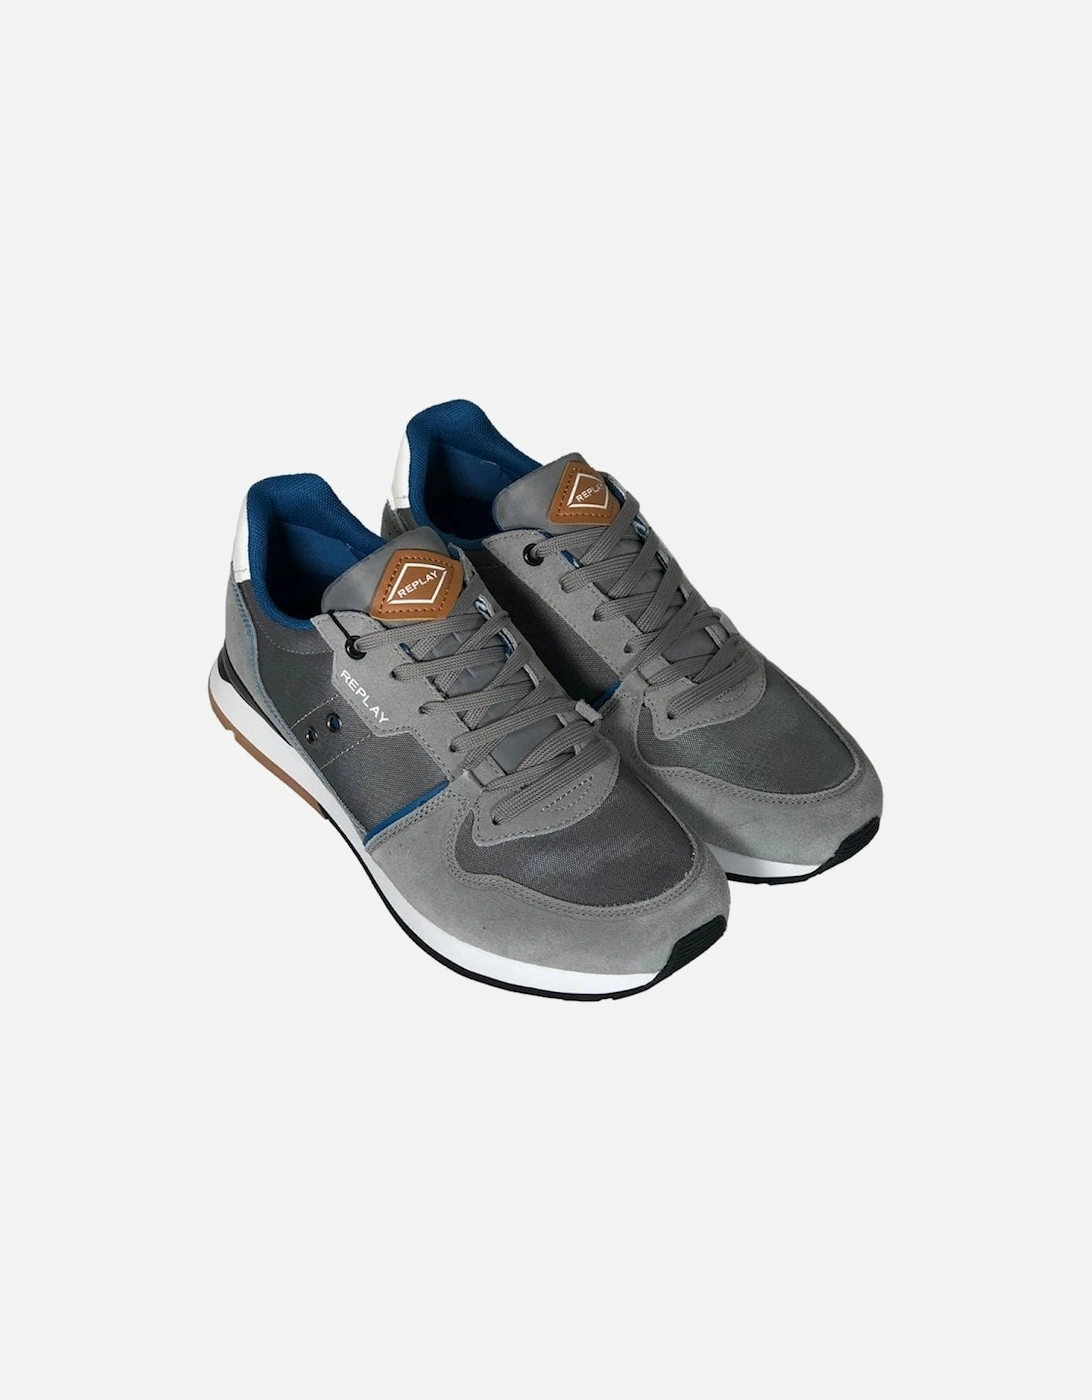 Mens Nylon Suede Sneaker Shoe 857 Grey